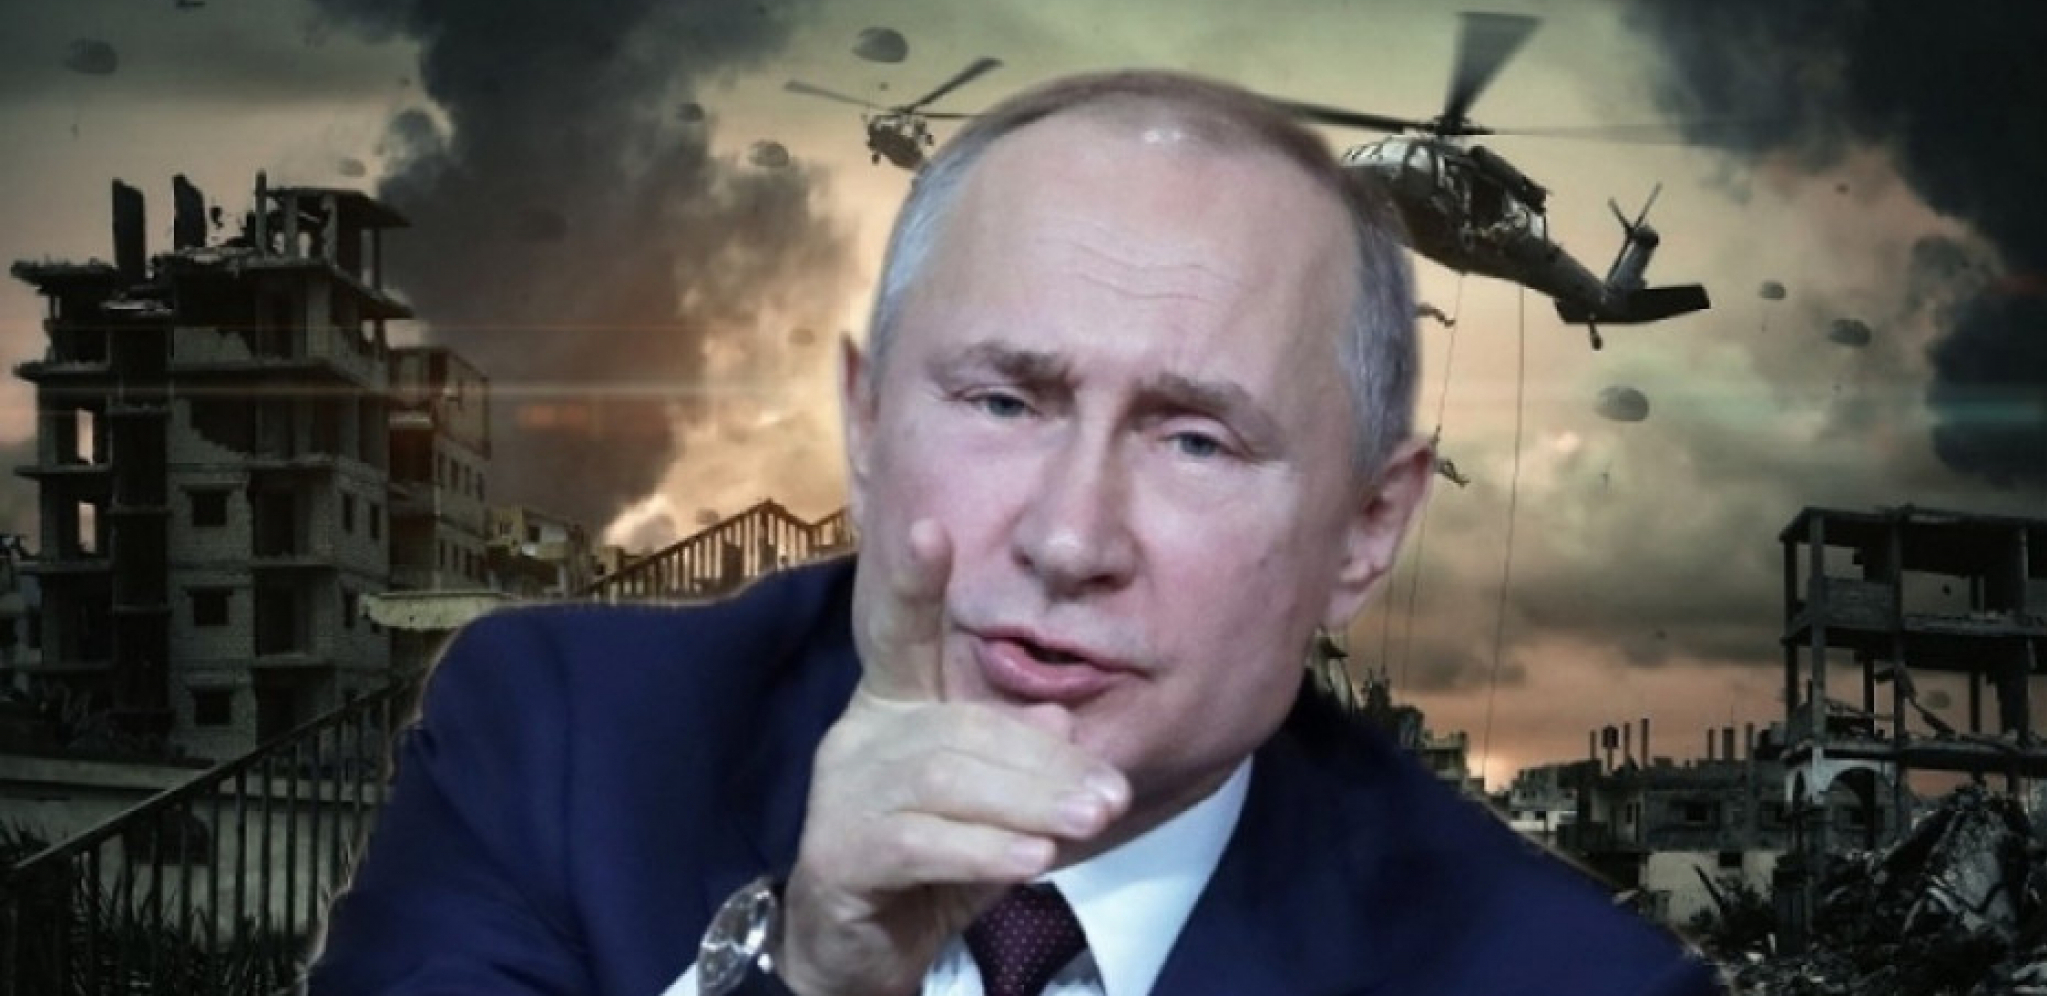 ZAPADNI ANALITIČAR TVRDI DA JE RUSIJA SLOMILA ZAPAD Putinu je u pravljenju strategije pomogla ova DREVNA KNJIGA!